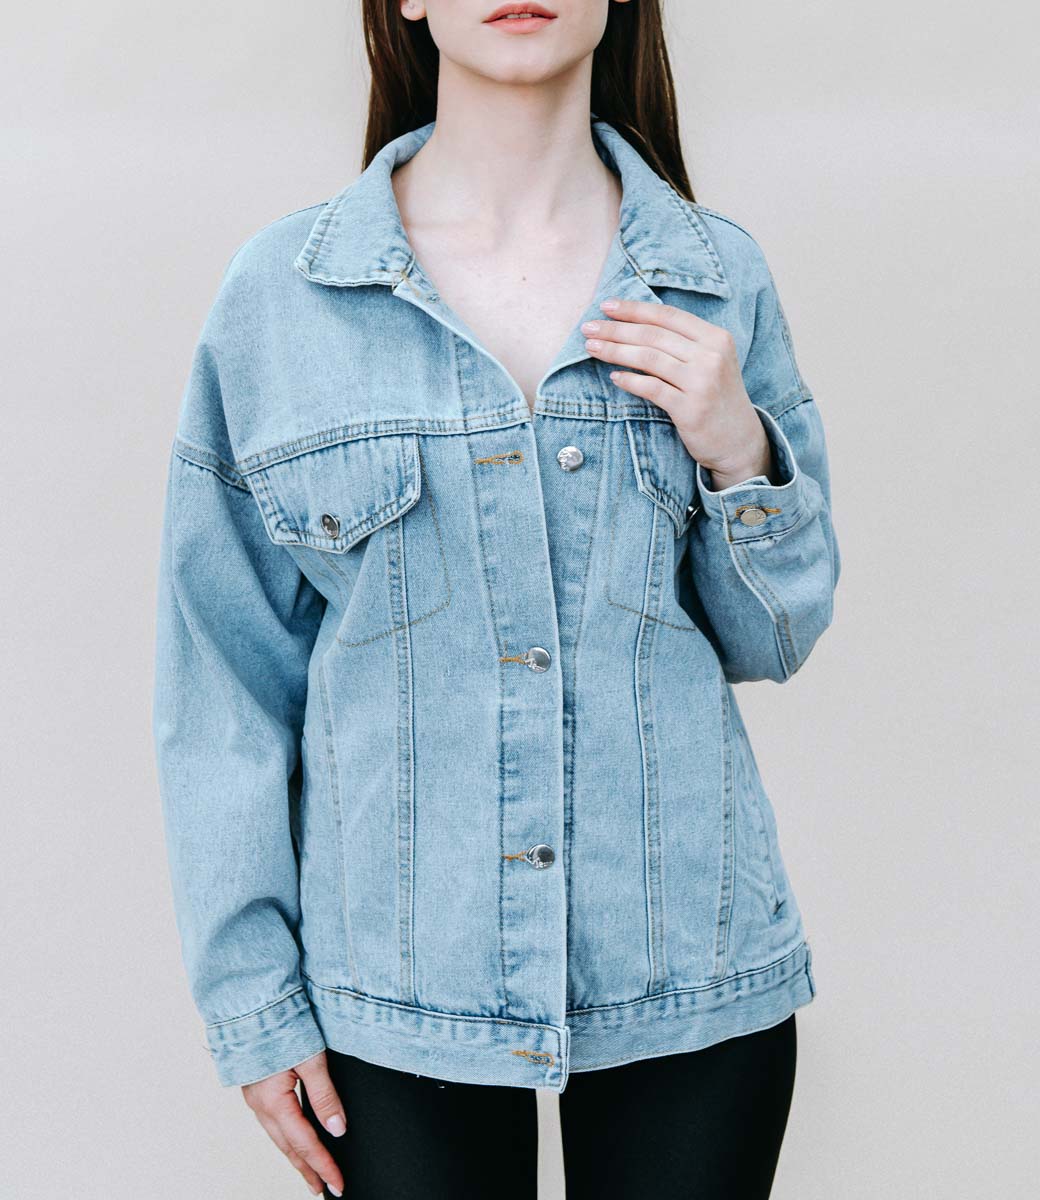 Джинсовая куртка #680, цвет синий - купить женские джинсовые куртки оптом